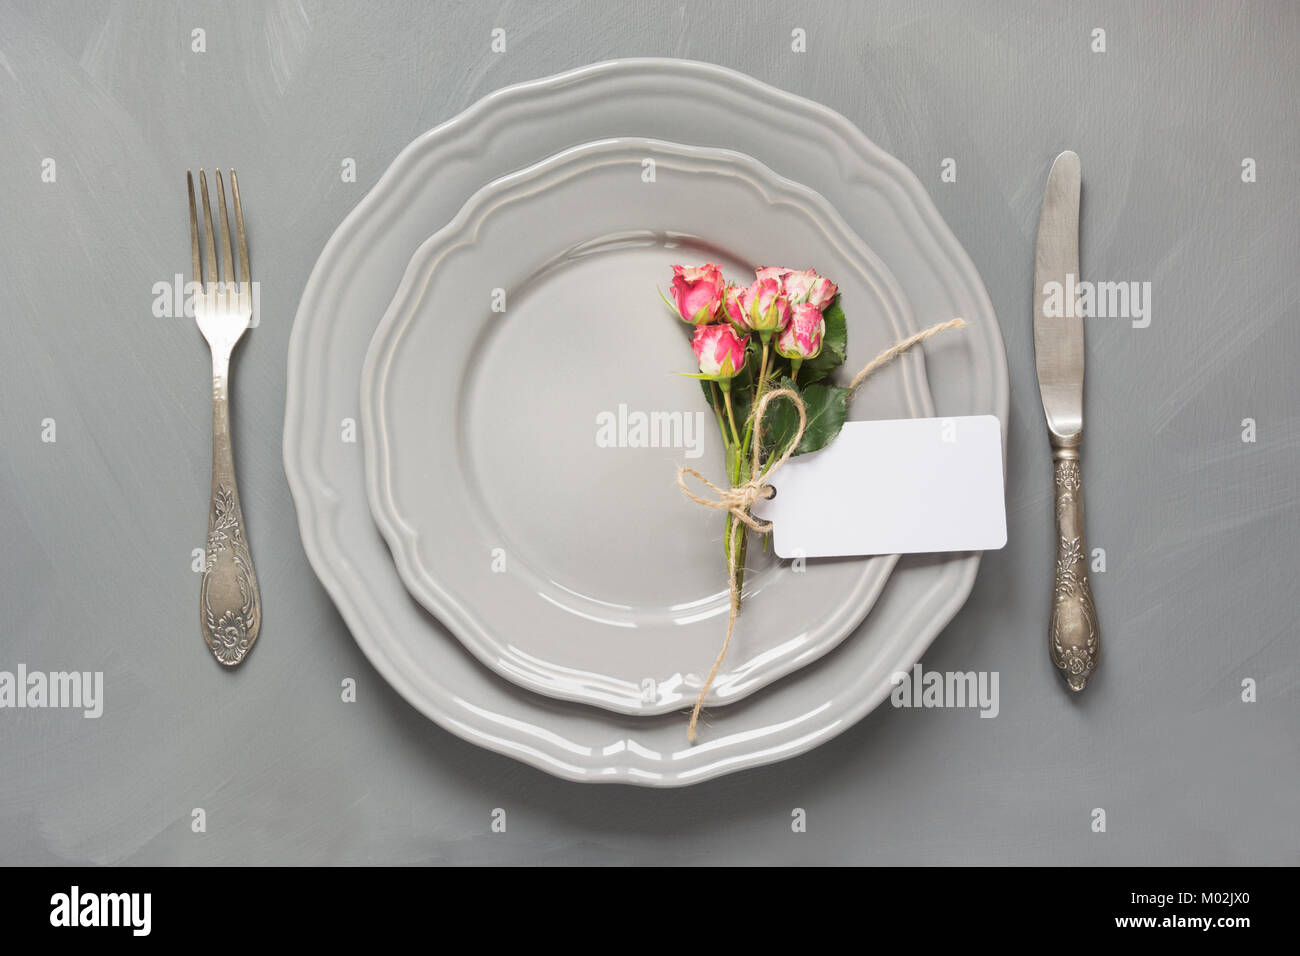 Table de fête avec des fleurs, de la vaisselle vintage, l'argenterie et les décorations sur fond gris. Vue d'en haut. Concept. Banque D'Images